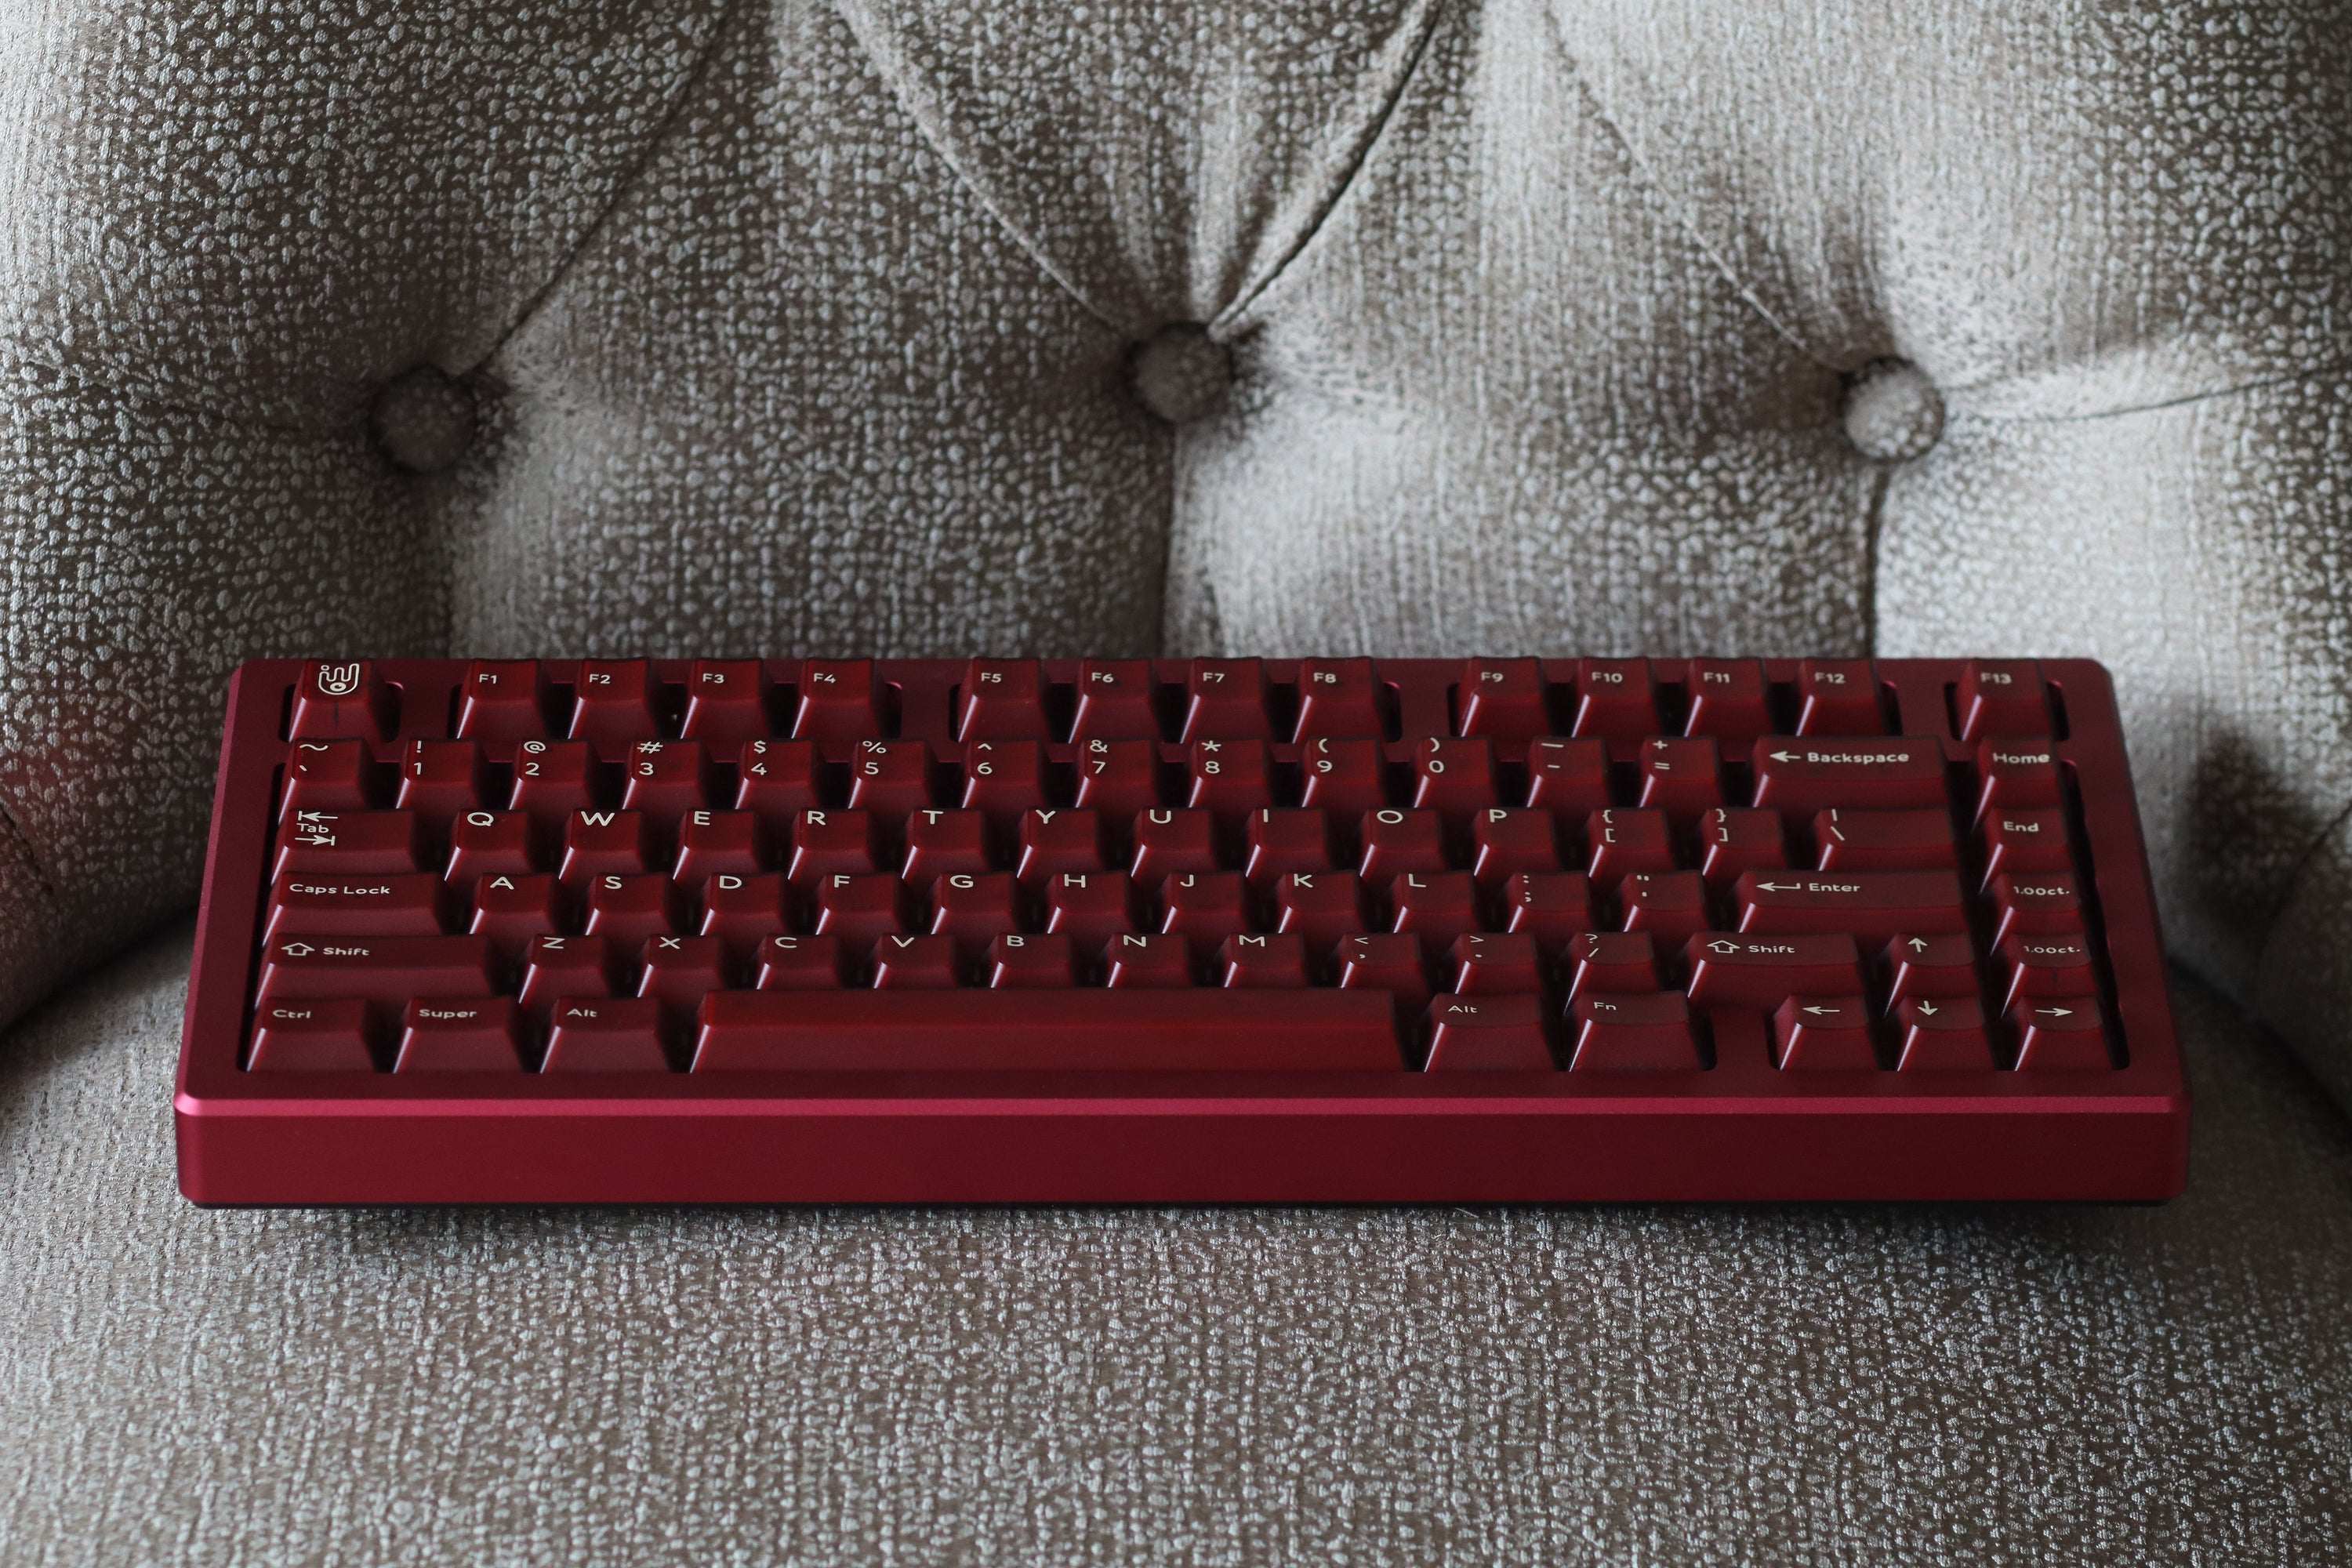 [Group-Buy] Jris75 PCB Gasket Mount Keyboard Kit - Wine Red&Black（Alu Weight）